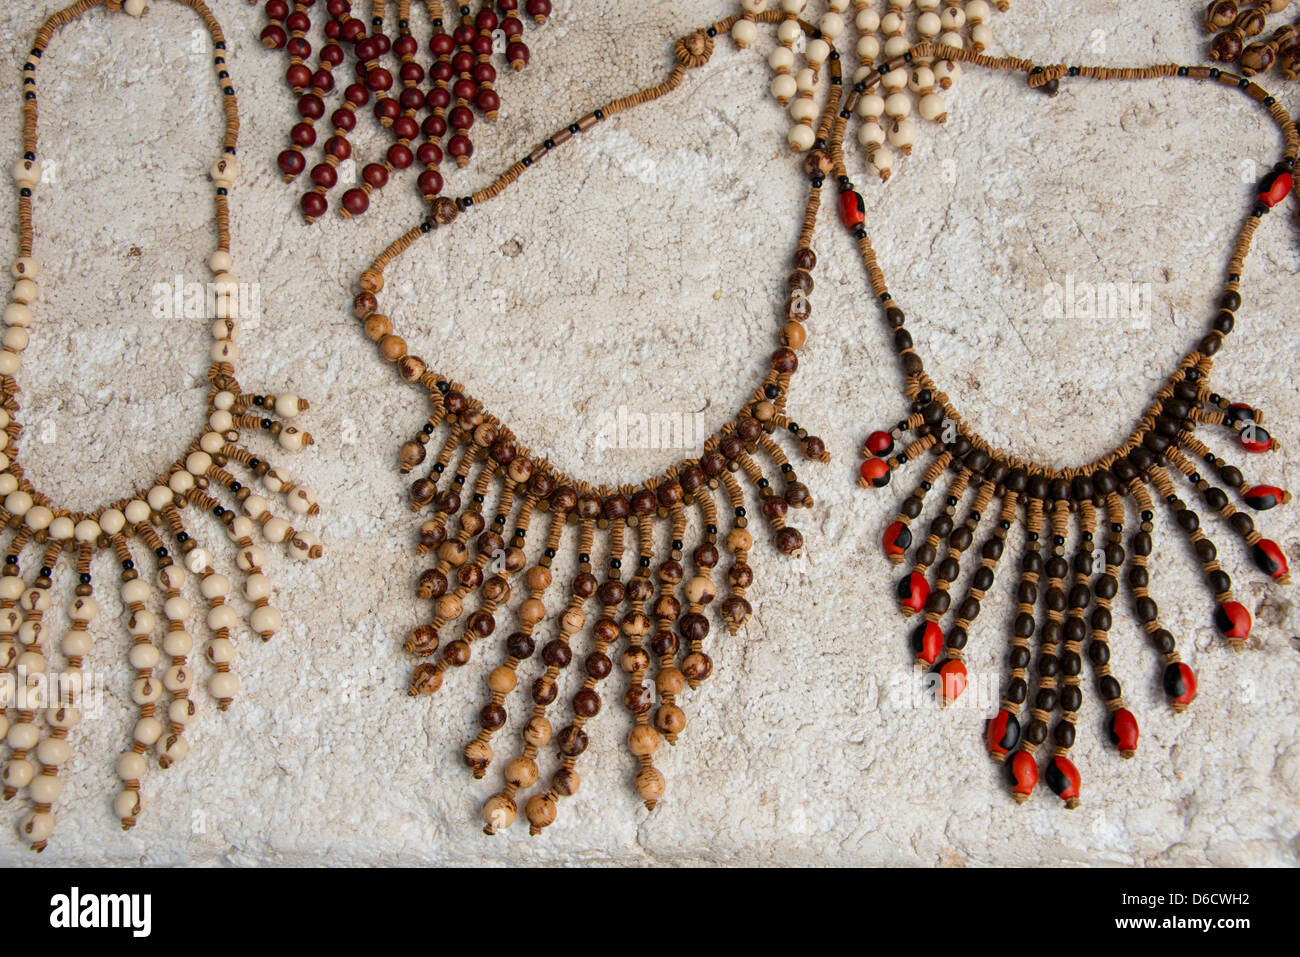 Brasil, Amazonas, Alter do Chao. Recuerdo típico collares artesanales  elaborados a partir de las nueces y las semillas Fotografía de stock - Alamy